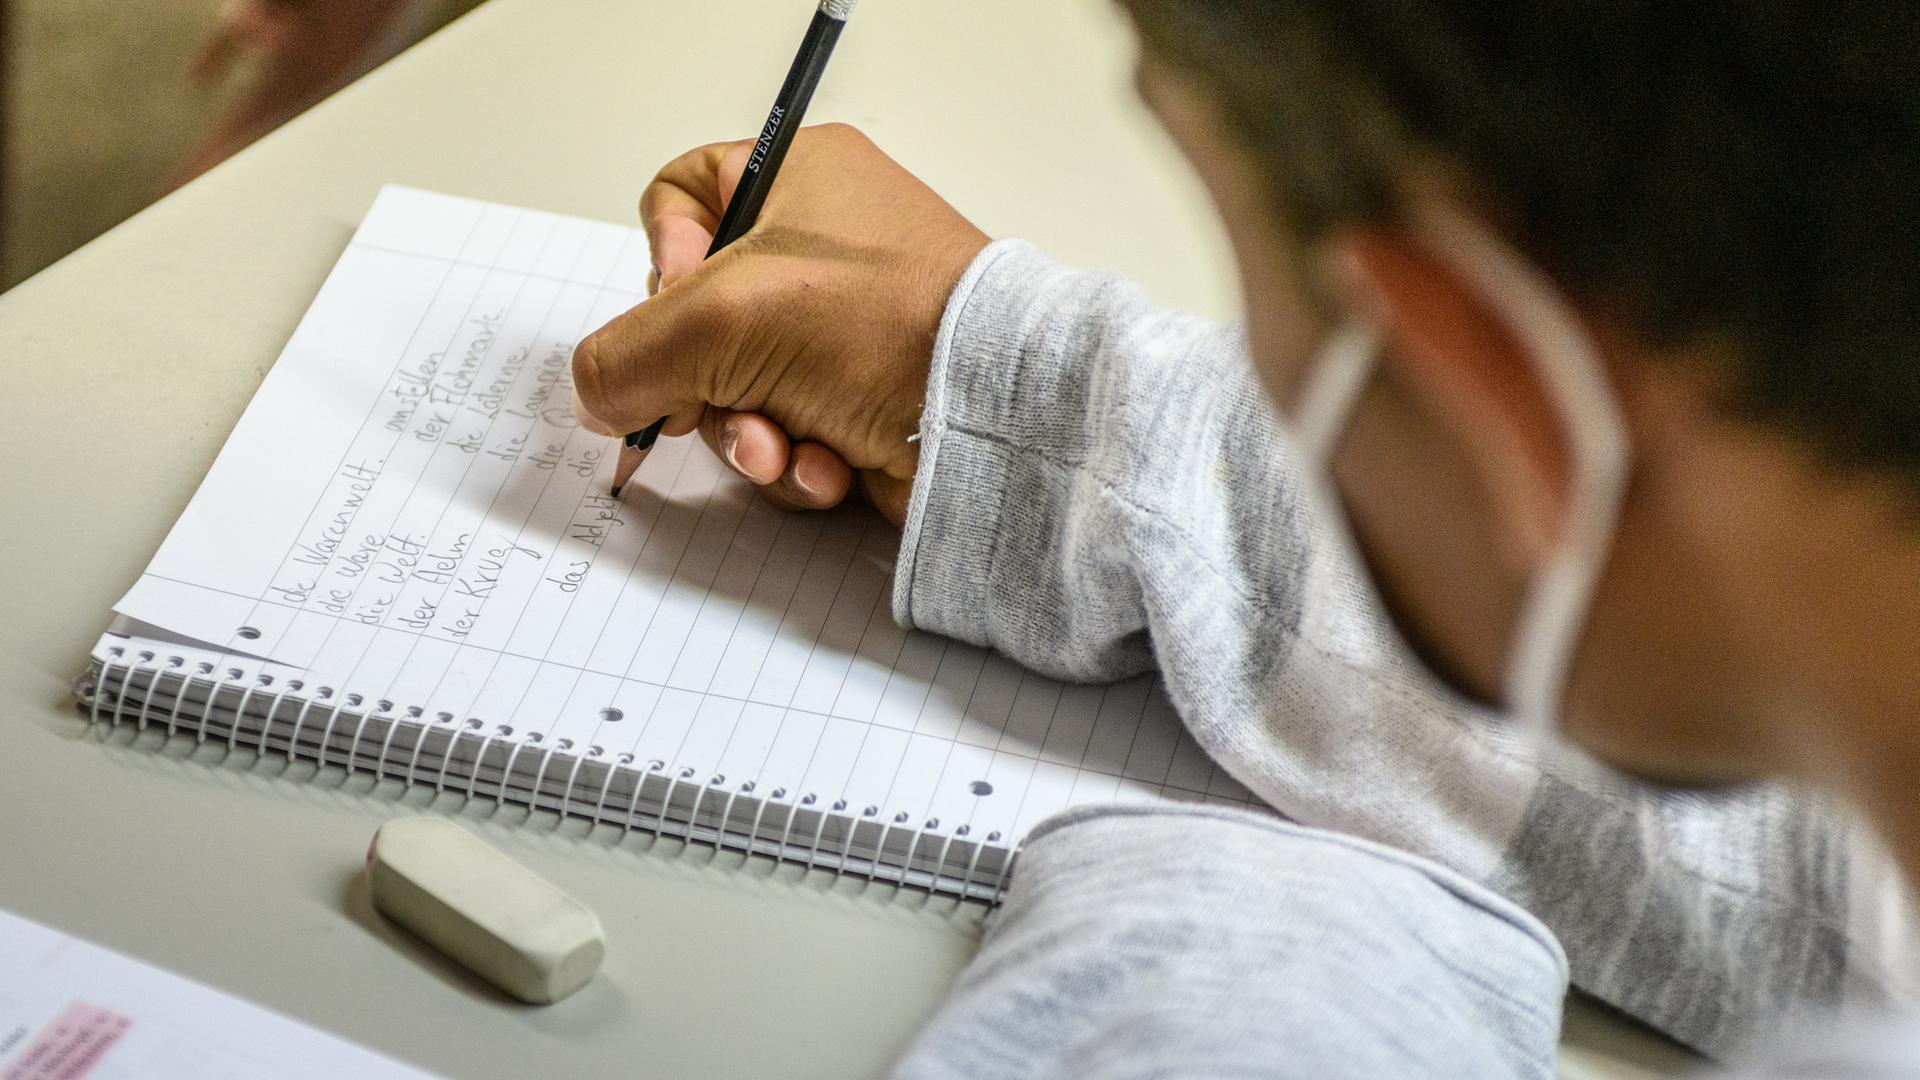 Ein junger Mann sitzt an einem Tisch und schreibt mit einem Bleistift auf einem linierten Spiralblock